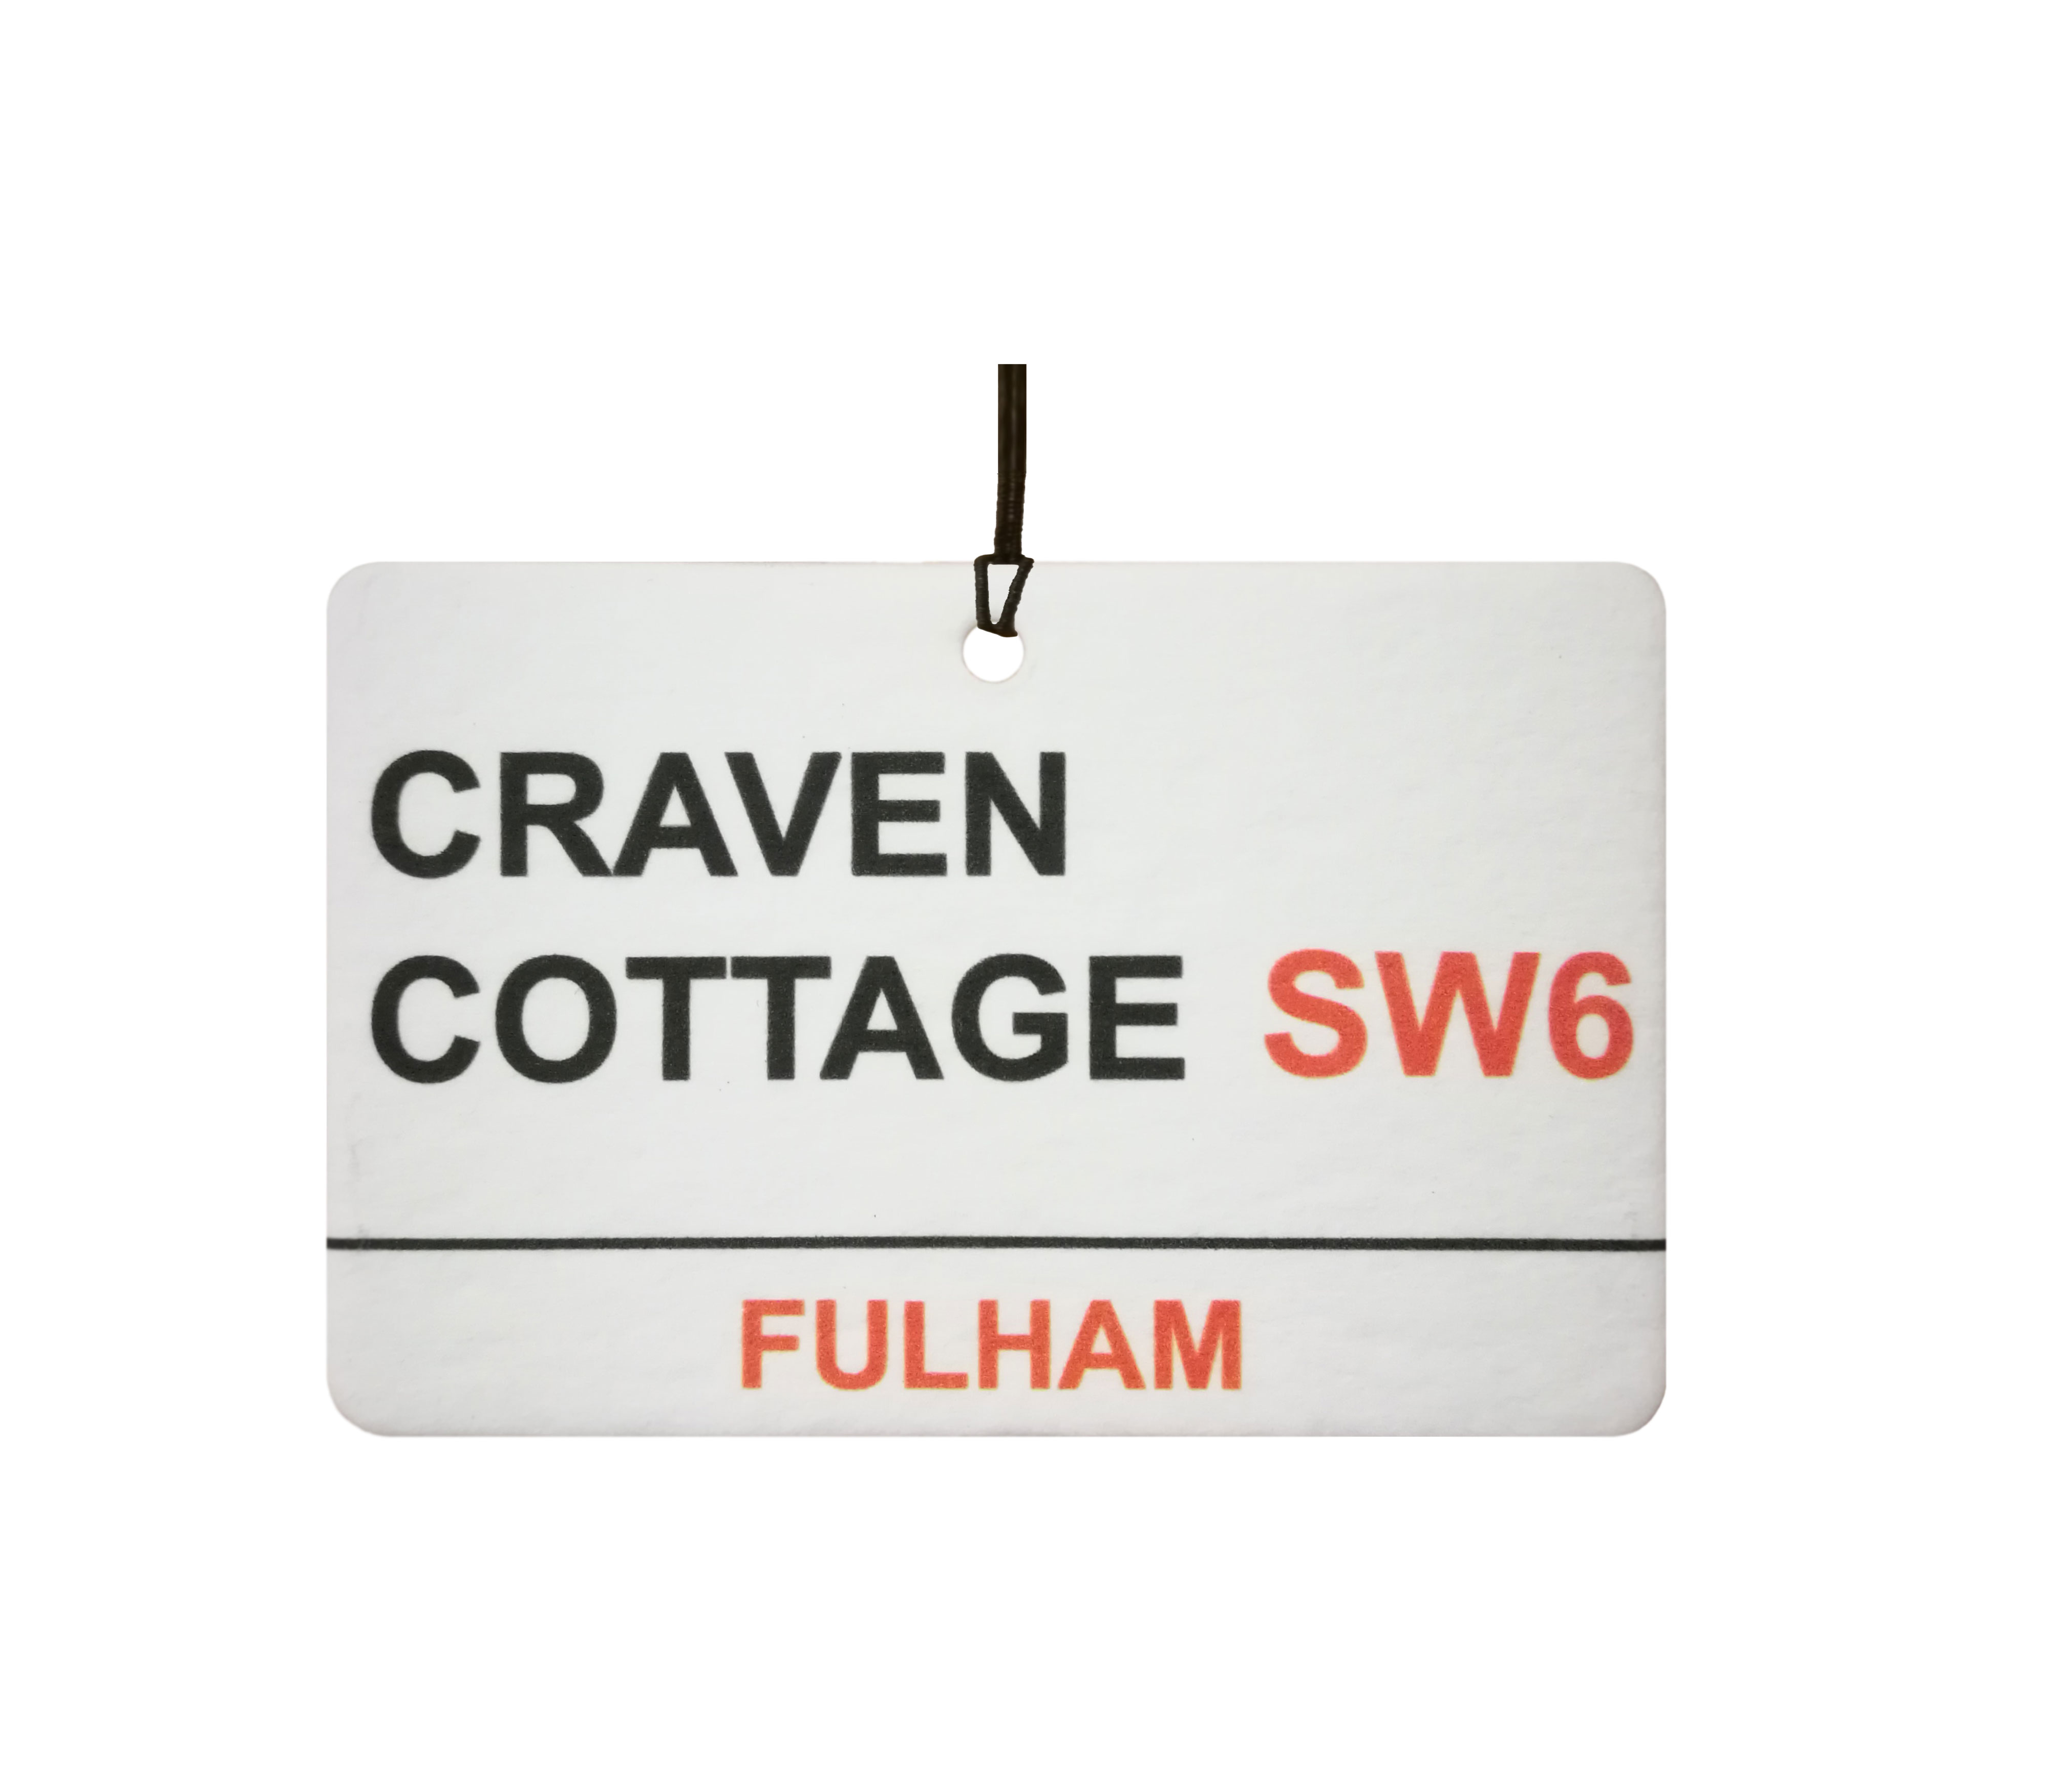 Fulham / Craven Cottage Street Sign